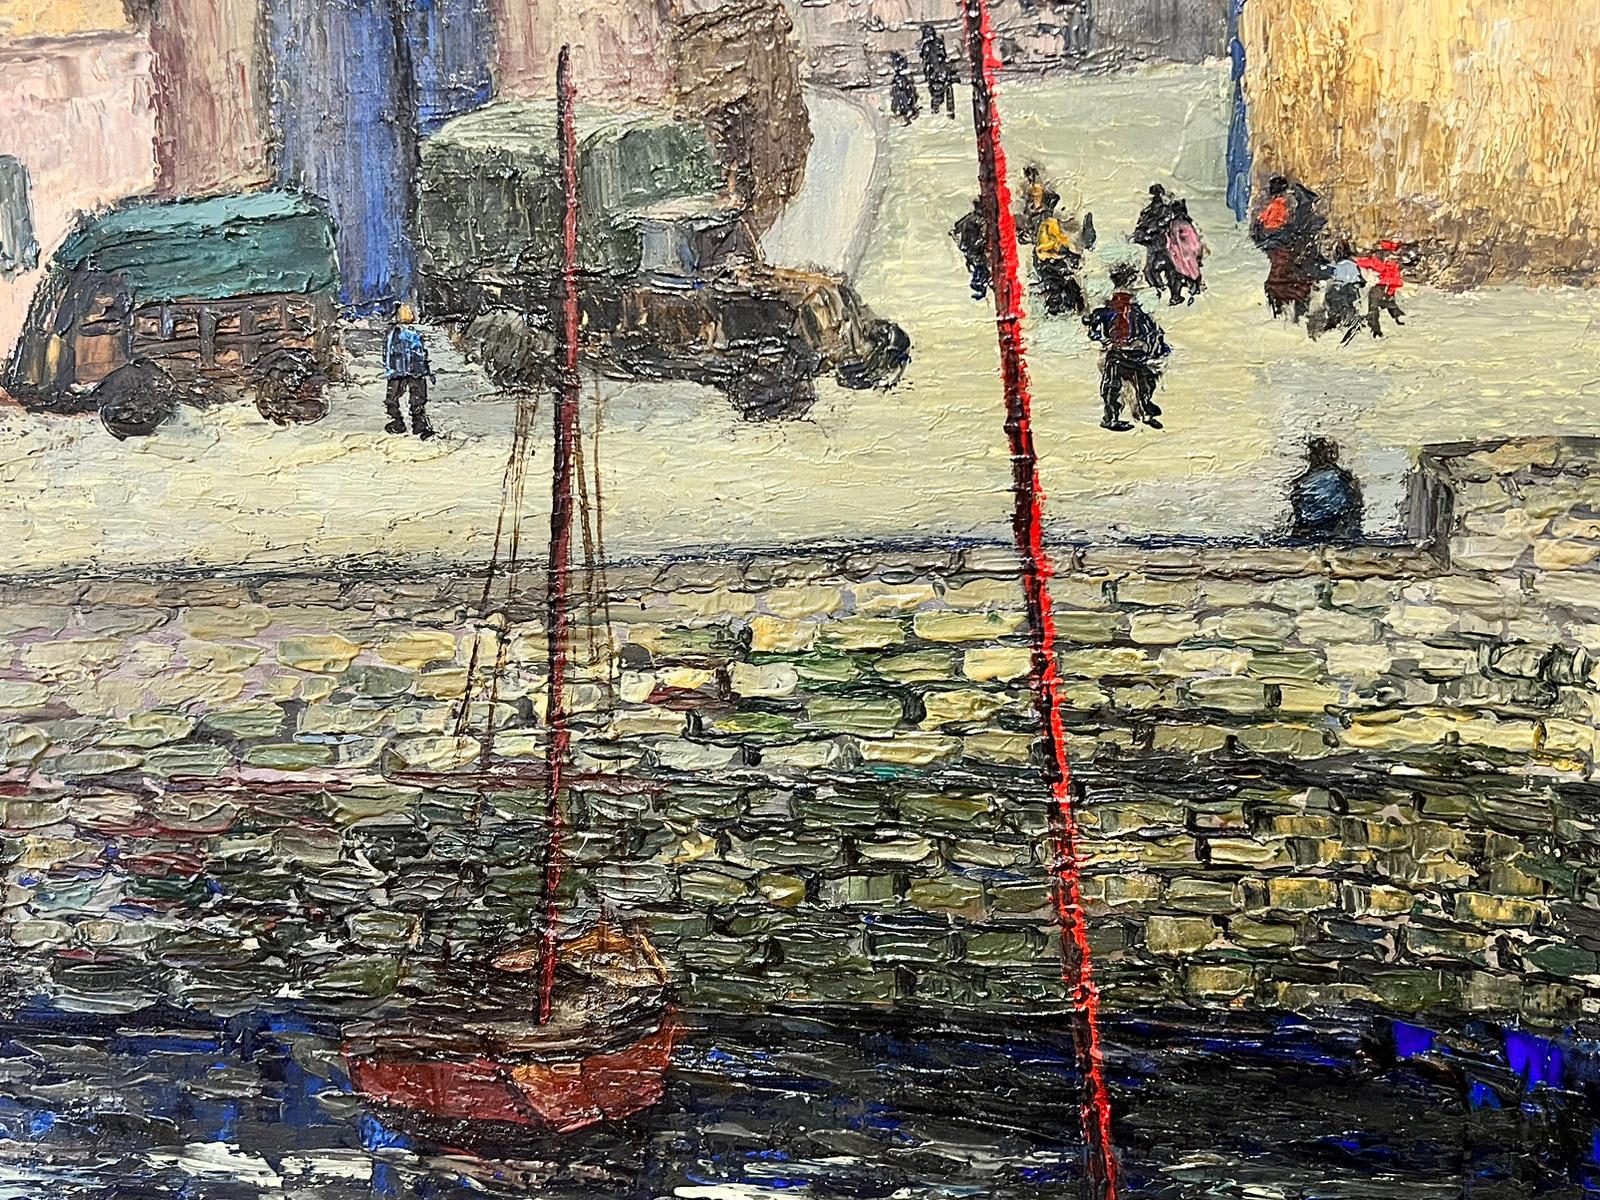 Port en Bessin Côte normande Grande huile post-impressionniste française des années 1960 - Painting de Josine Vignon